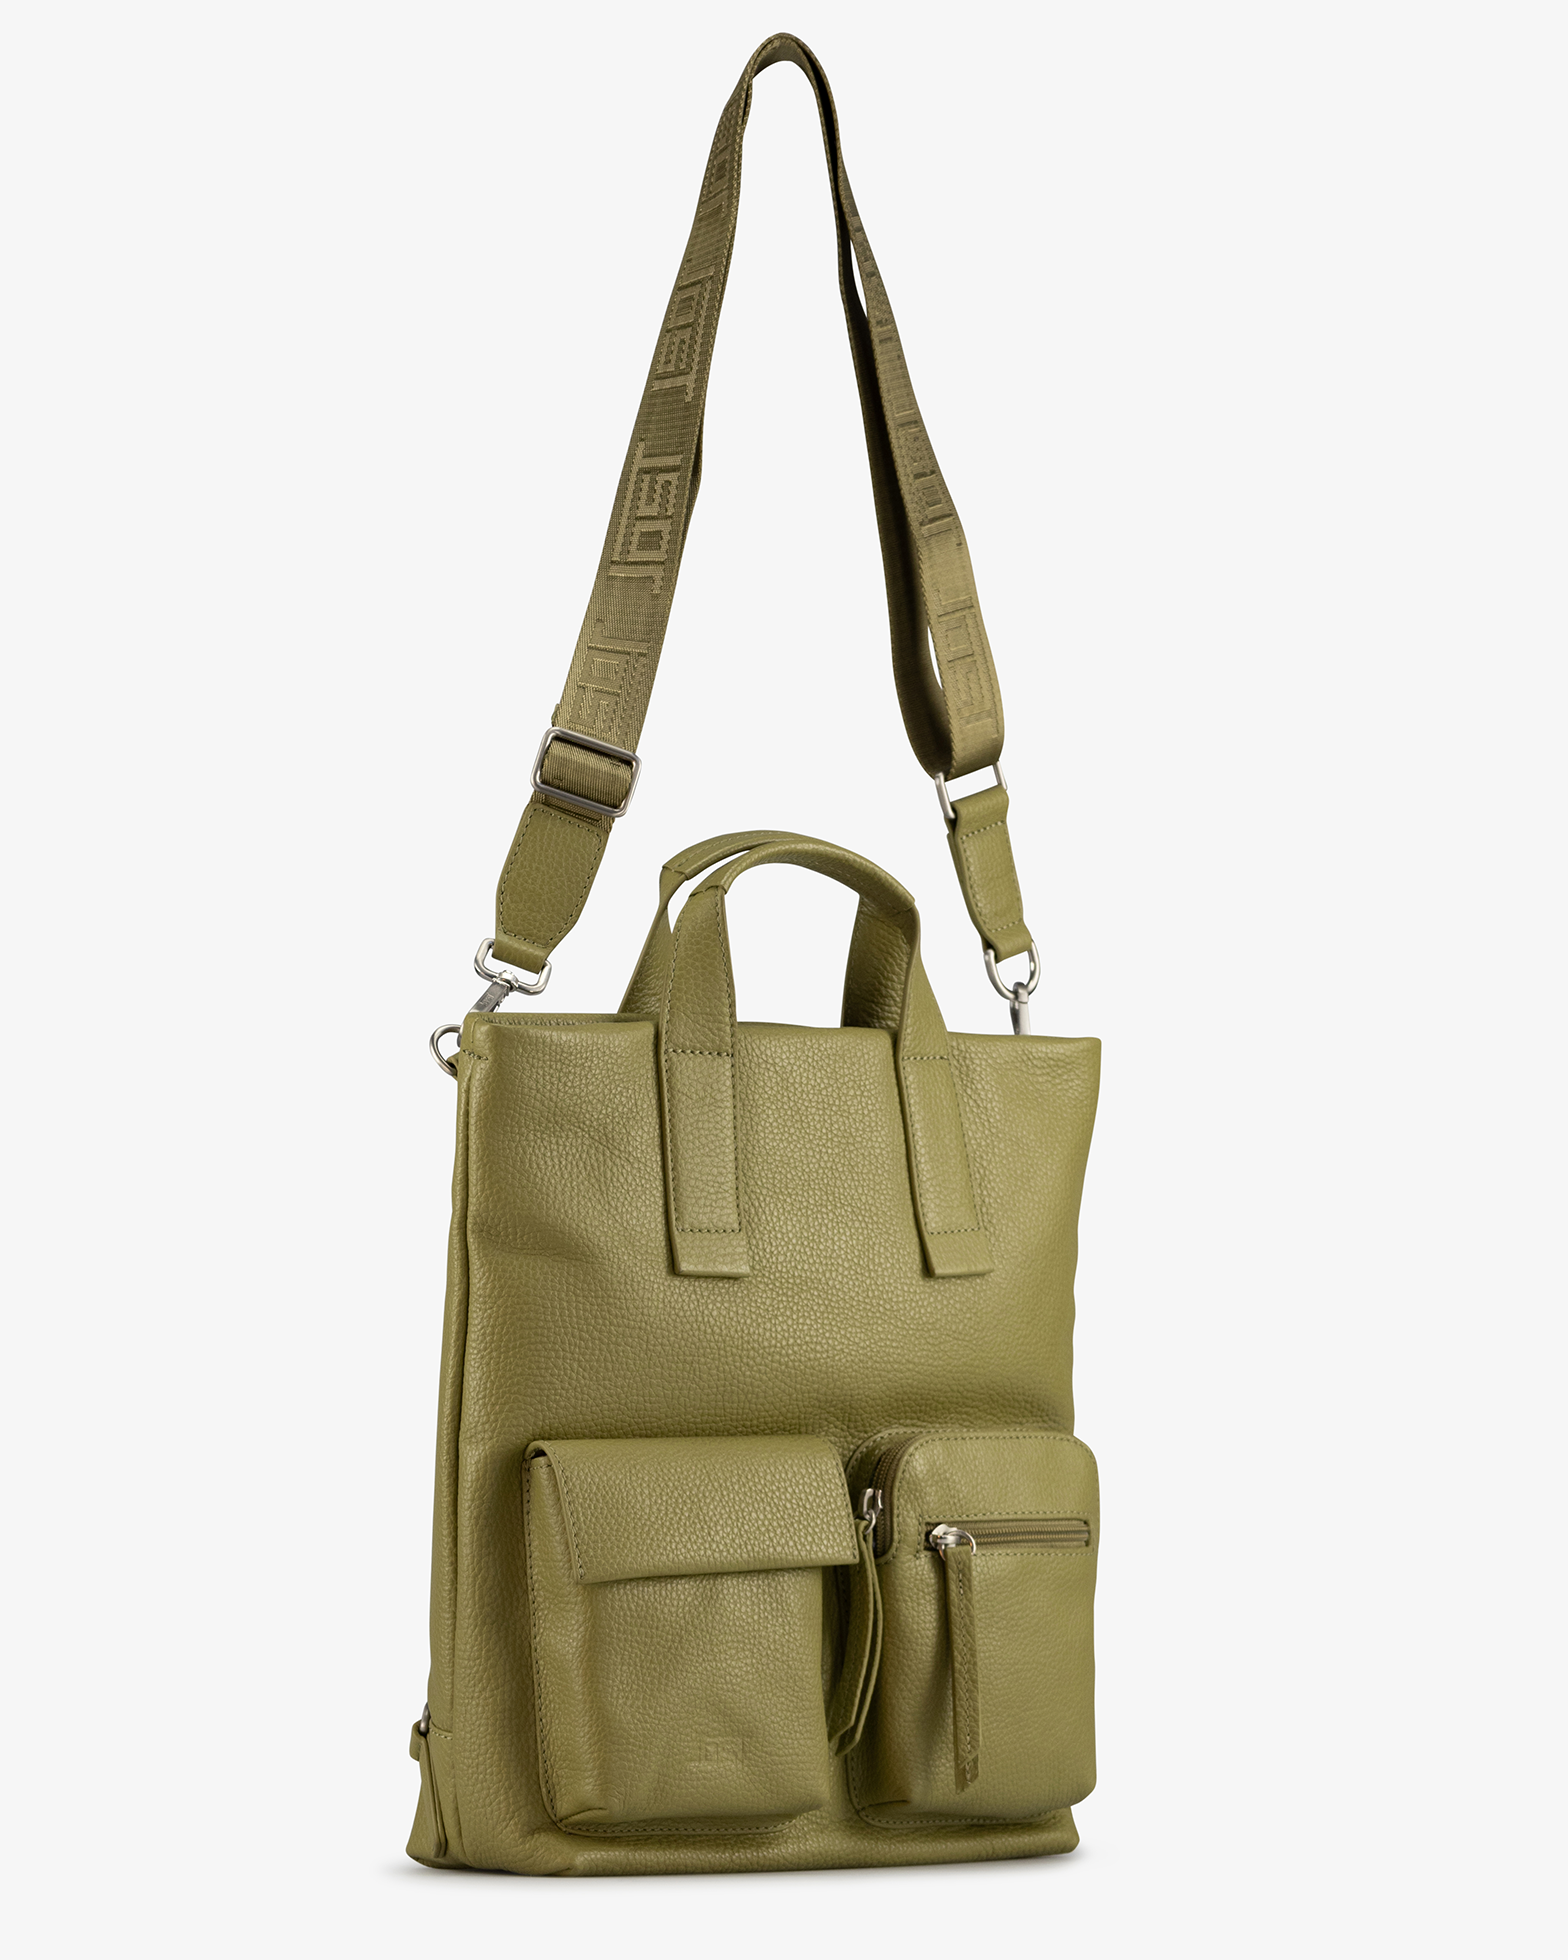 Jost Handtasche mit Rucksackfunktion + Fronttaschen Vika X-Change XS grün